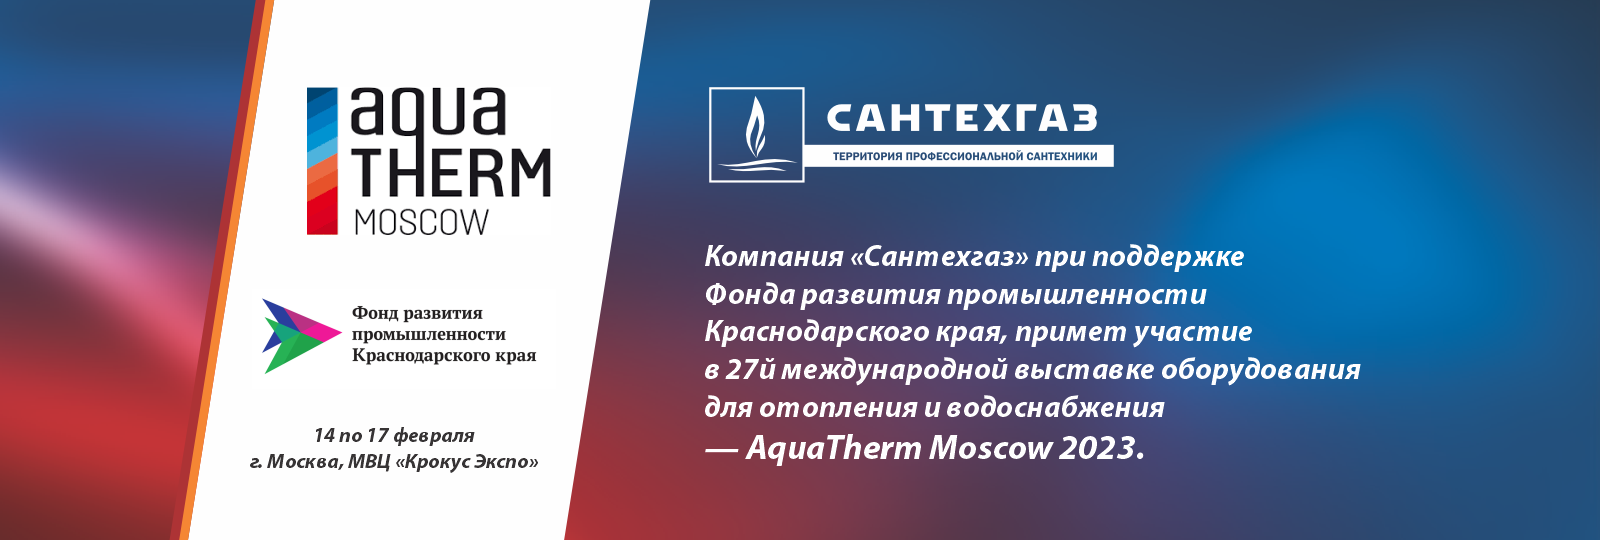 Компания «Сантехгаз» приглашает на выставку Aquatherm Moscow 2023